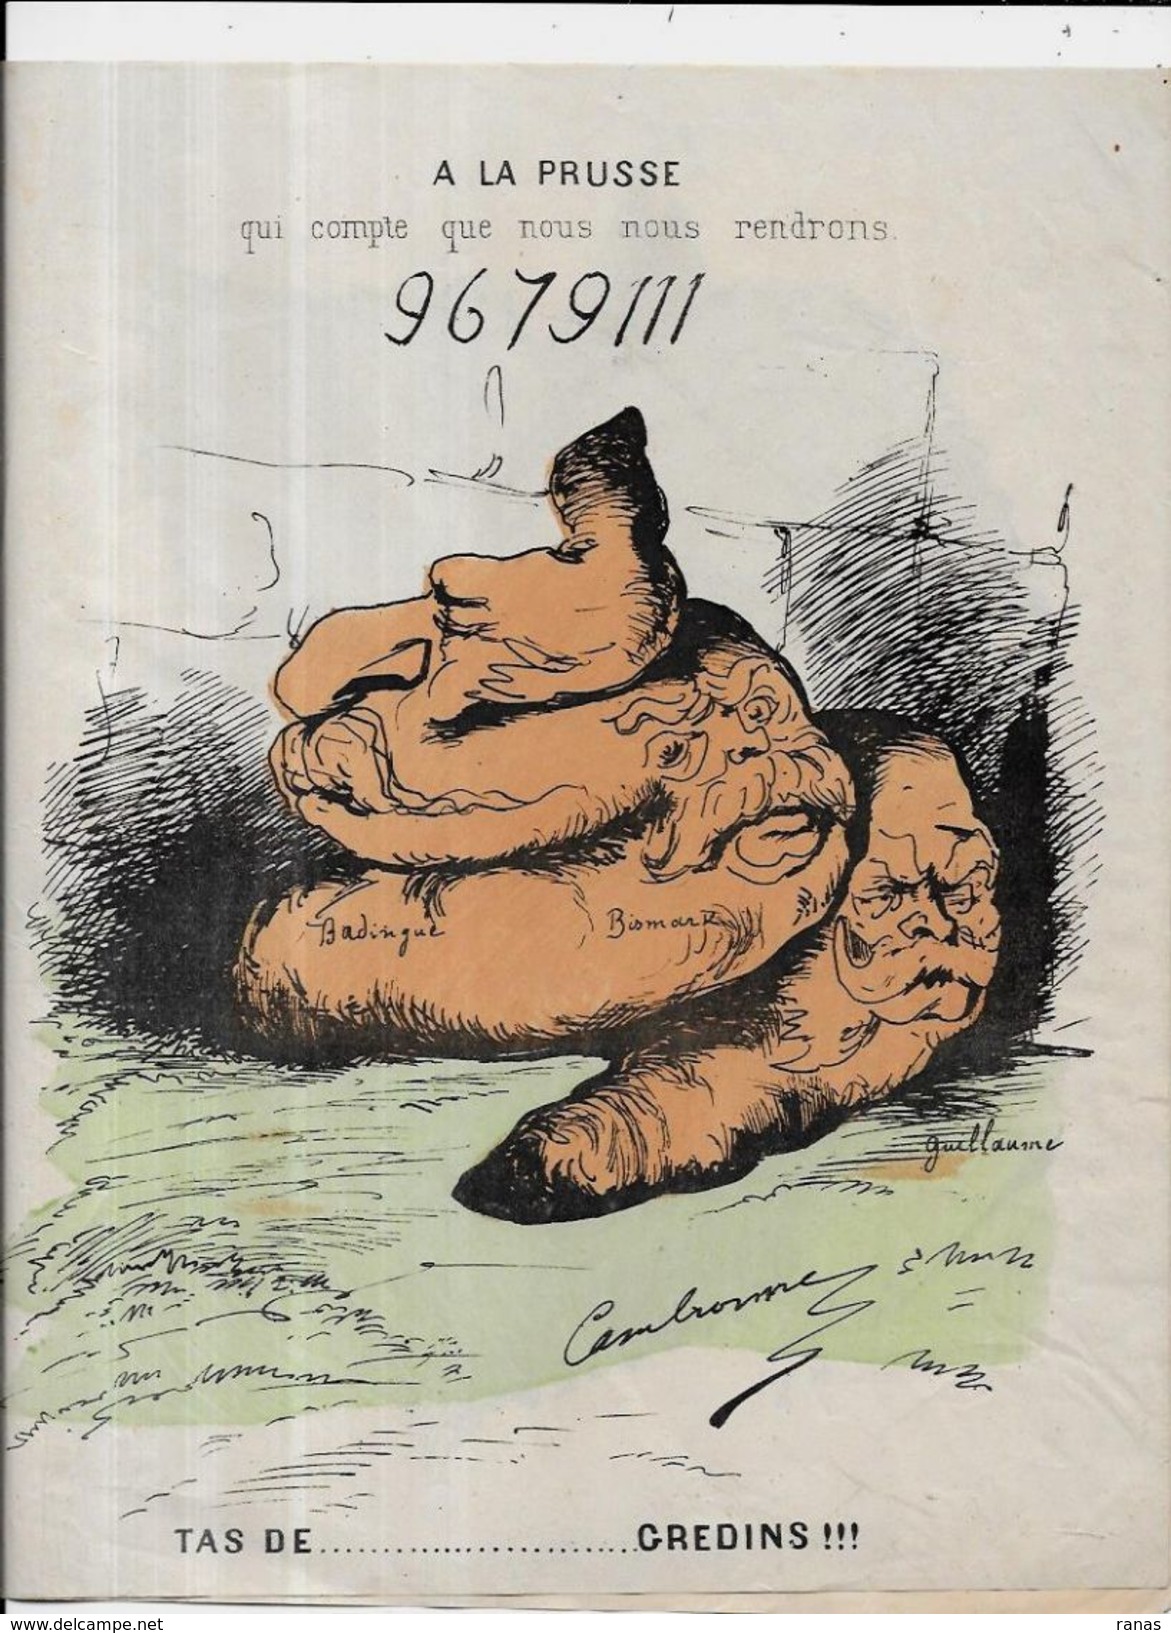 Estampe Gravure Satirique Caricature D'époque 1870 Bismarck Guillaume Napoléon III Deux Volets Scatologie - Estampas & Grabados